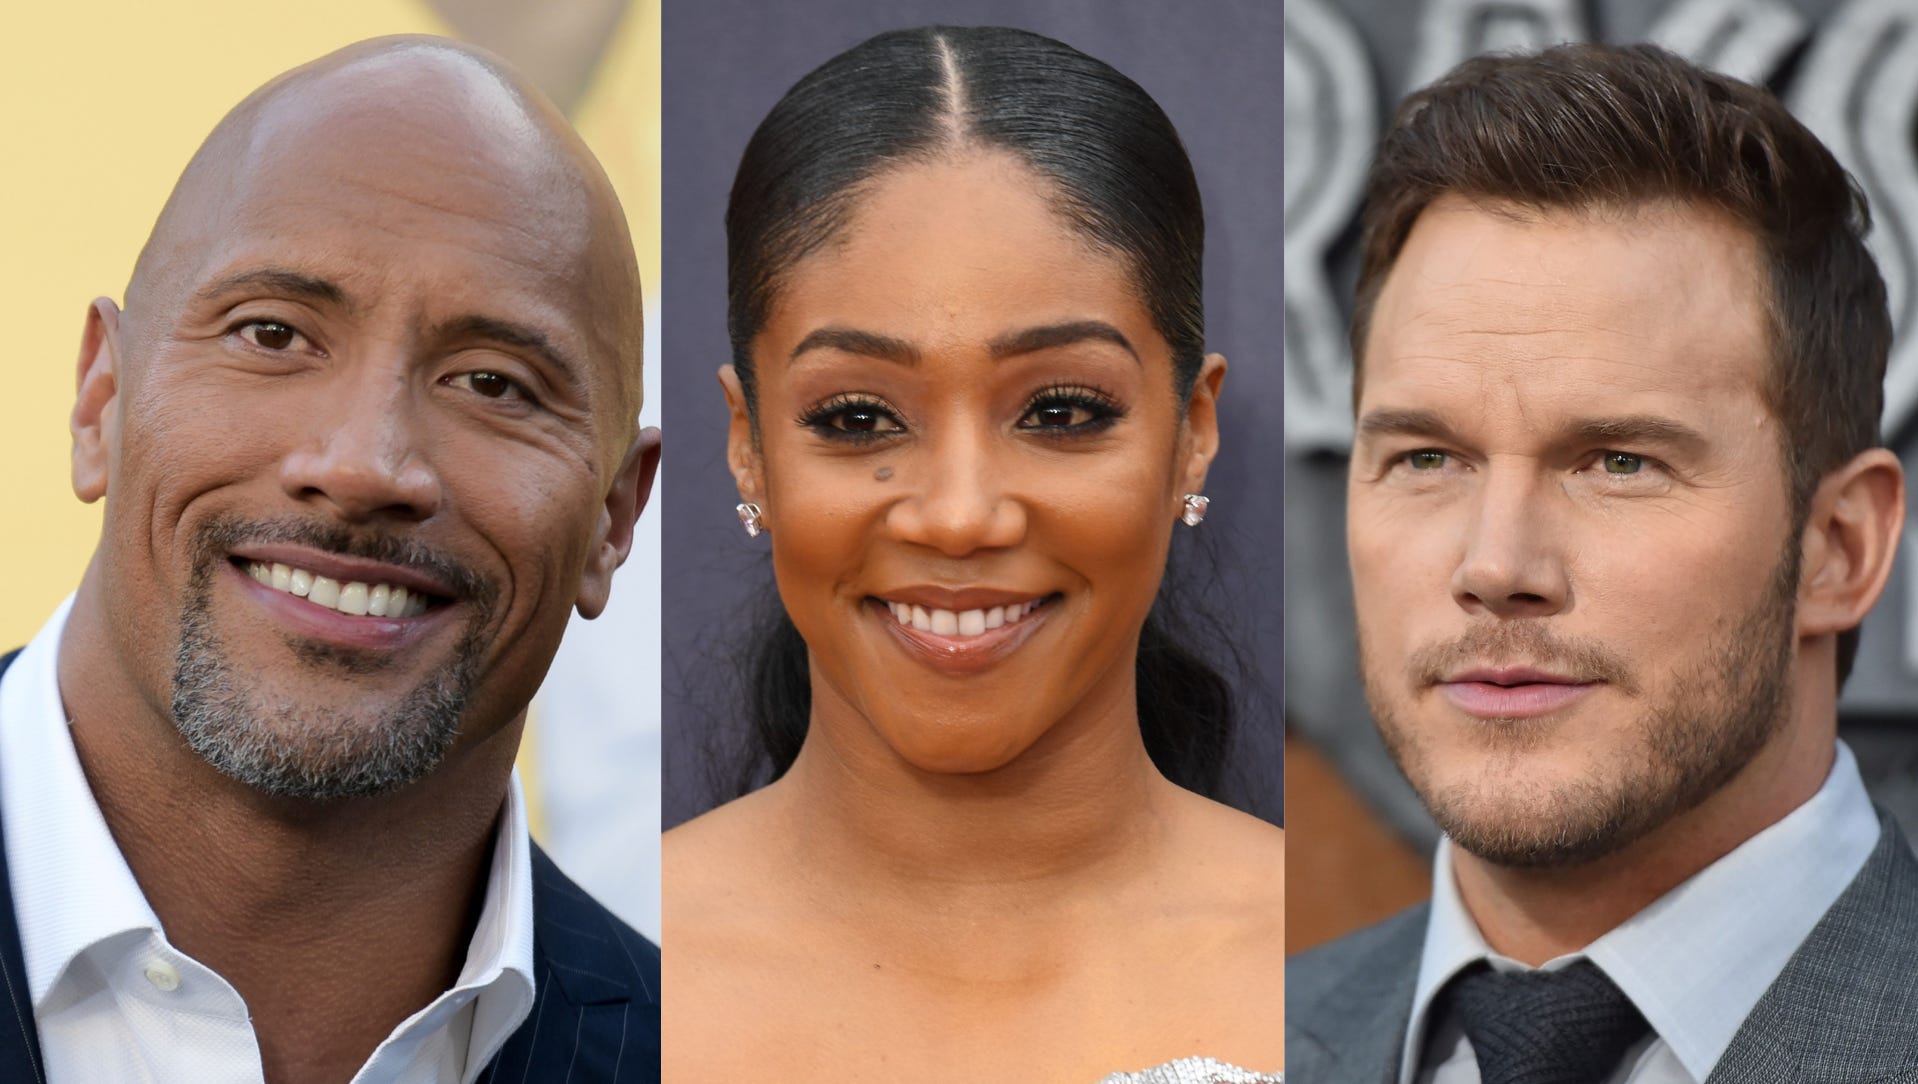 Mundskyl Tilsvarende problem Hollywood's 10 most in-demand actors